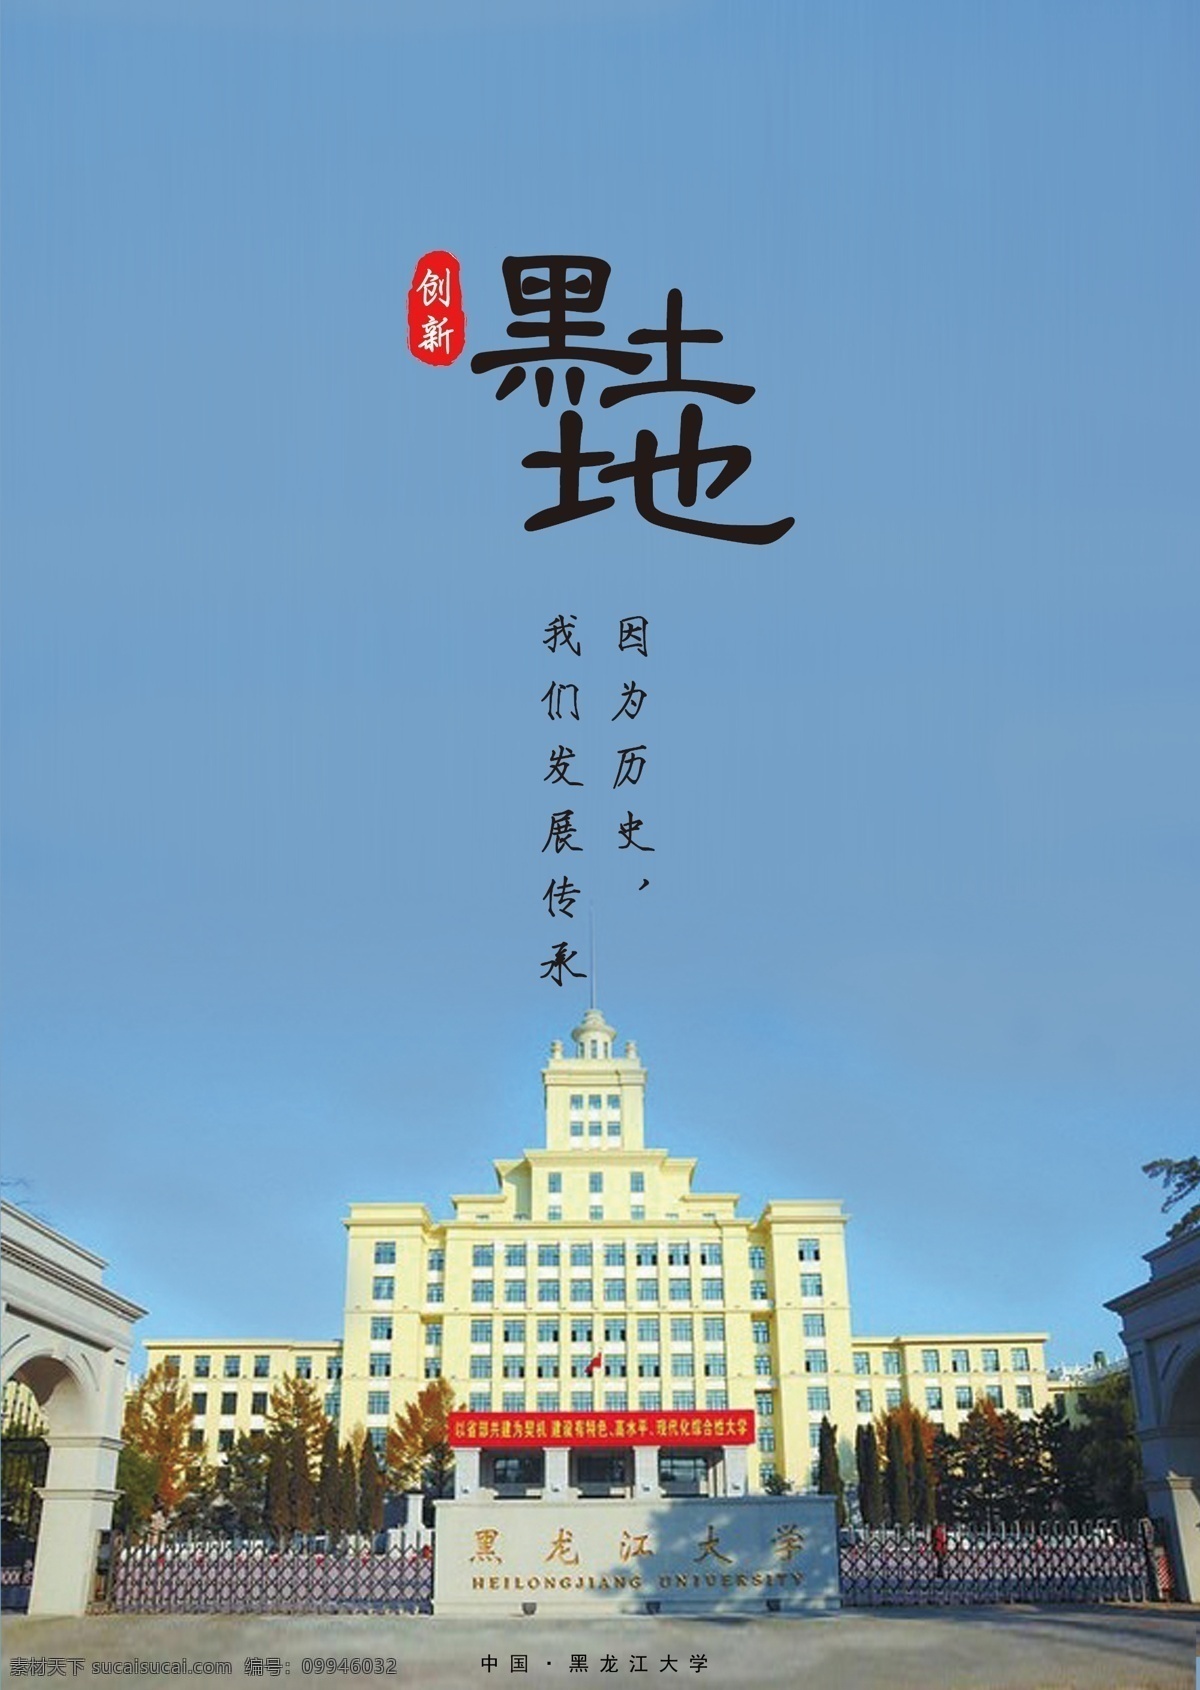 黑土地 海报 标志建筑 黑龙江大学 蓝色